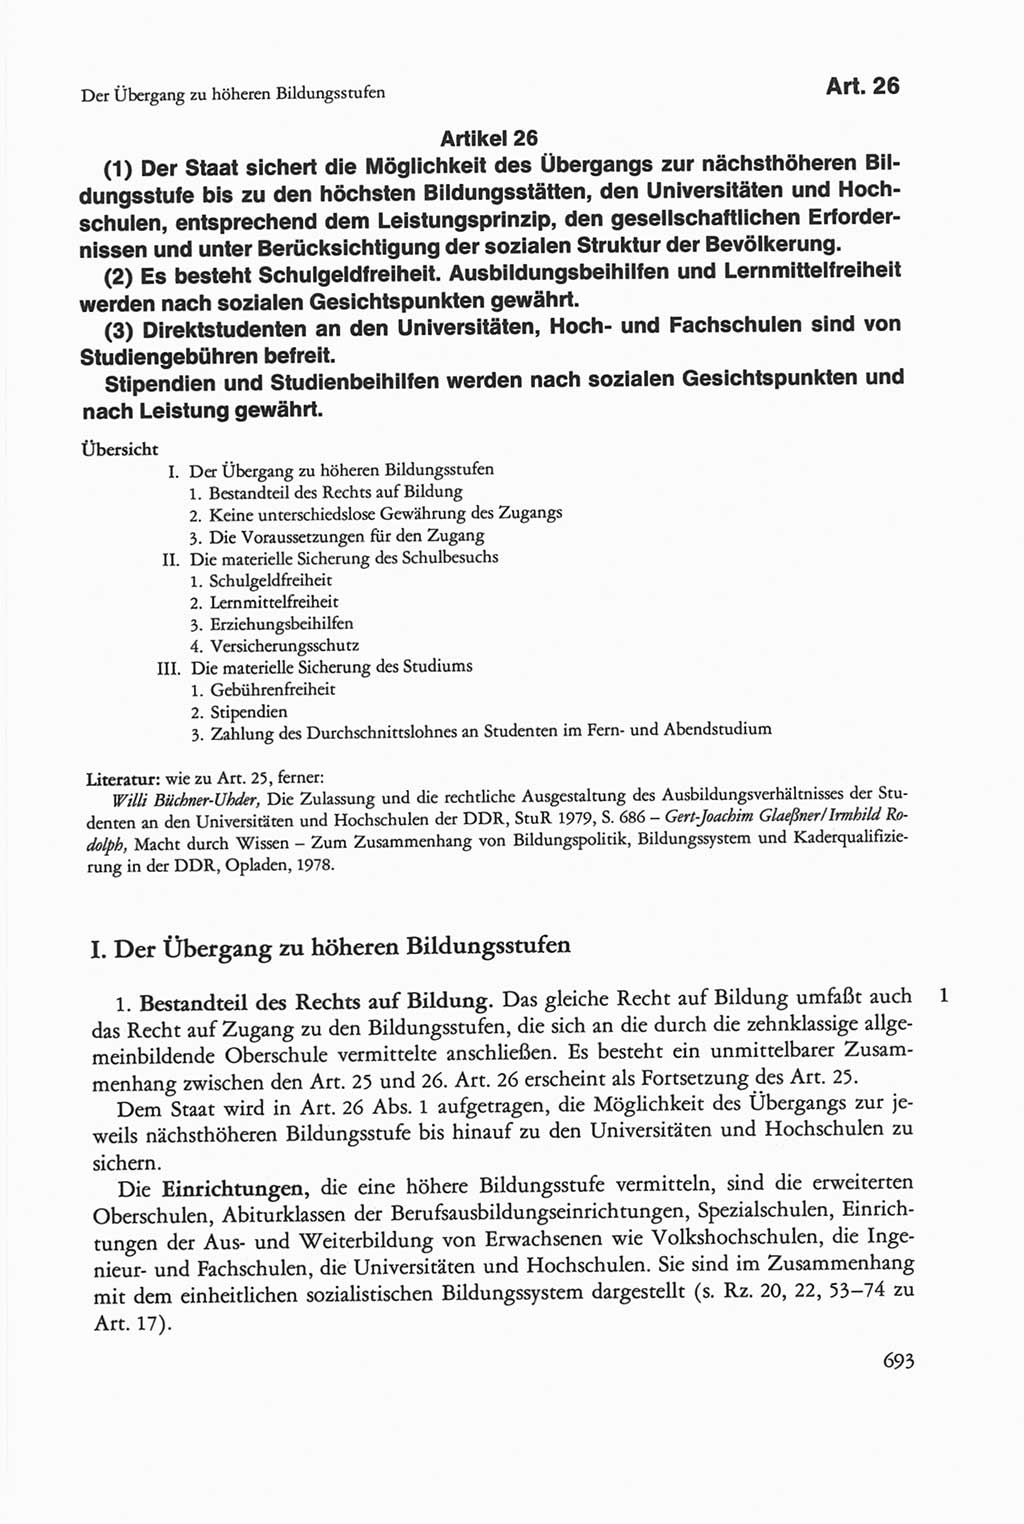 Die sozialistische Verfassung der Deutschen Demokratischen Republik (DDR), Kommentar mit einem Nachtrag 1997, Seite 693 (Soz. Verf. DDR Komm. Nachtr. 1997, S. 693)